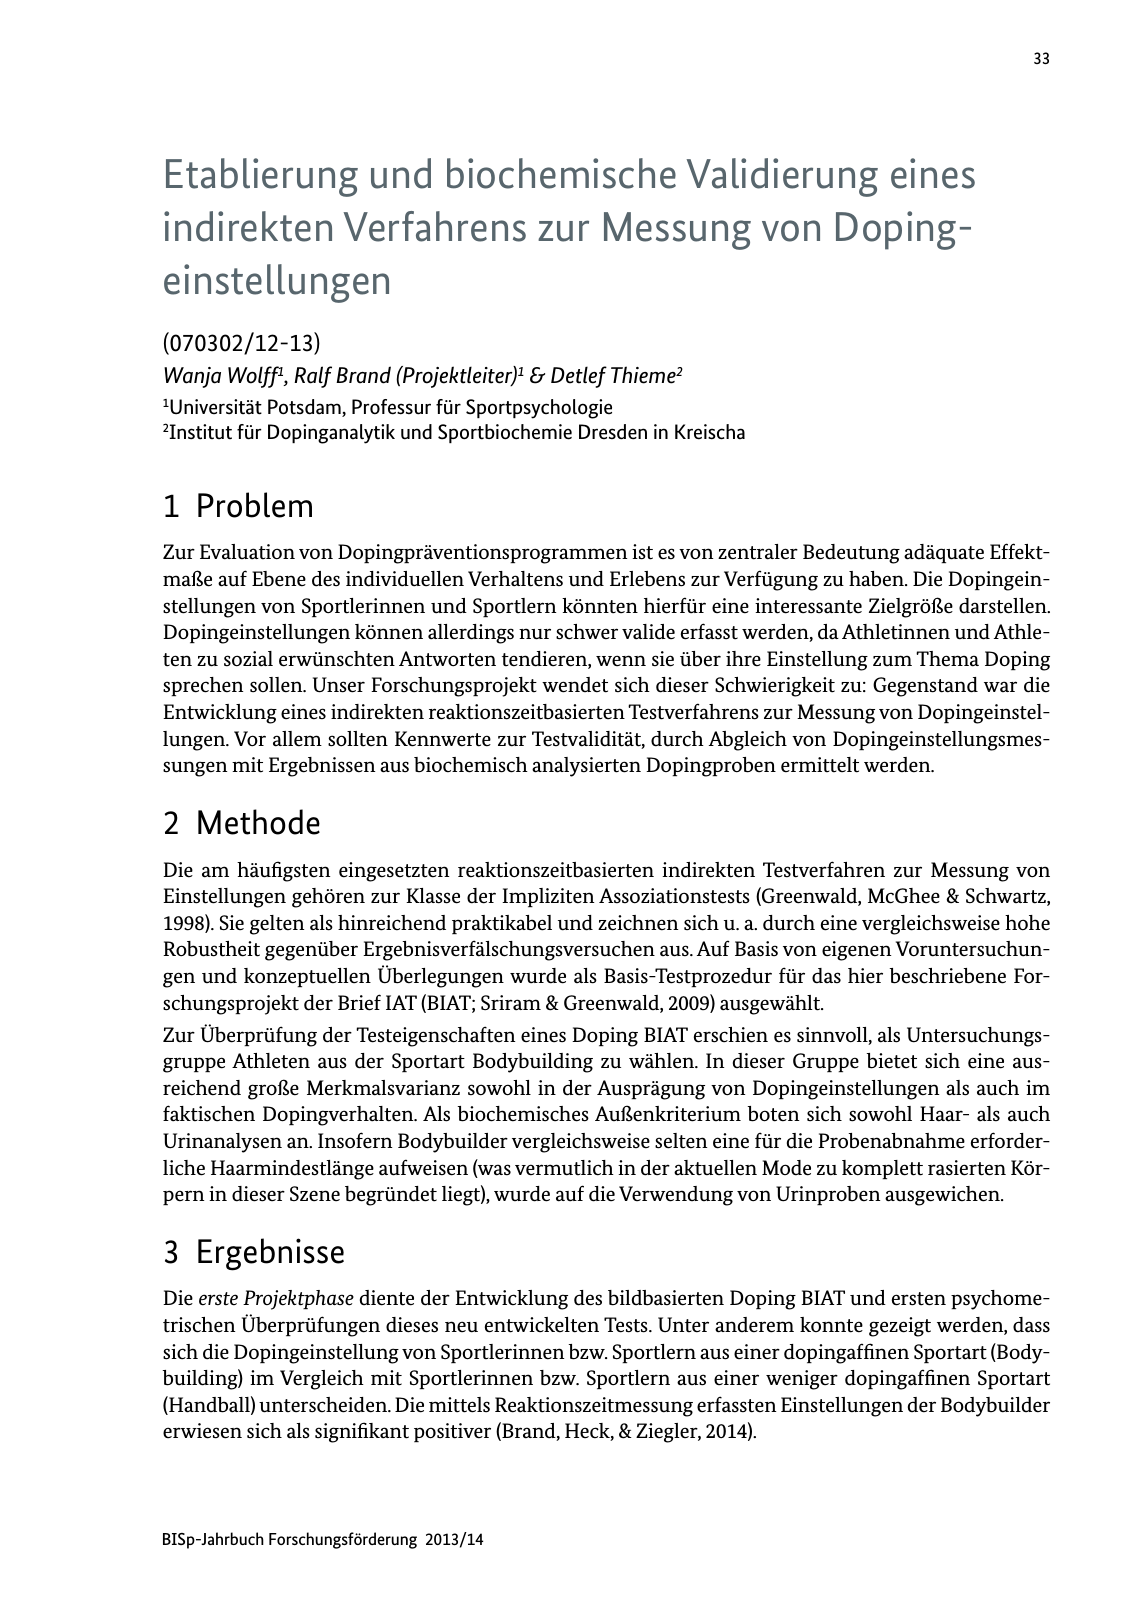 Vorschau BISp-Jahrbuch Forschungsförderung 2013/14 Seite 34